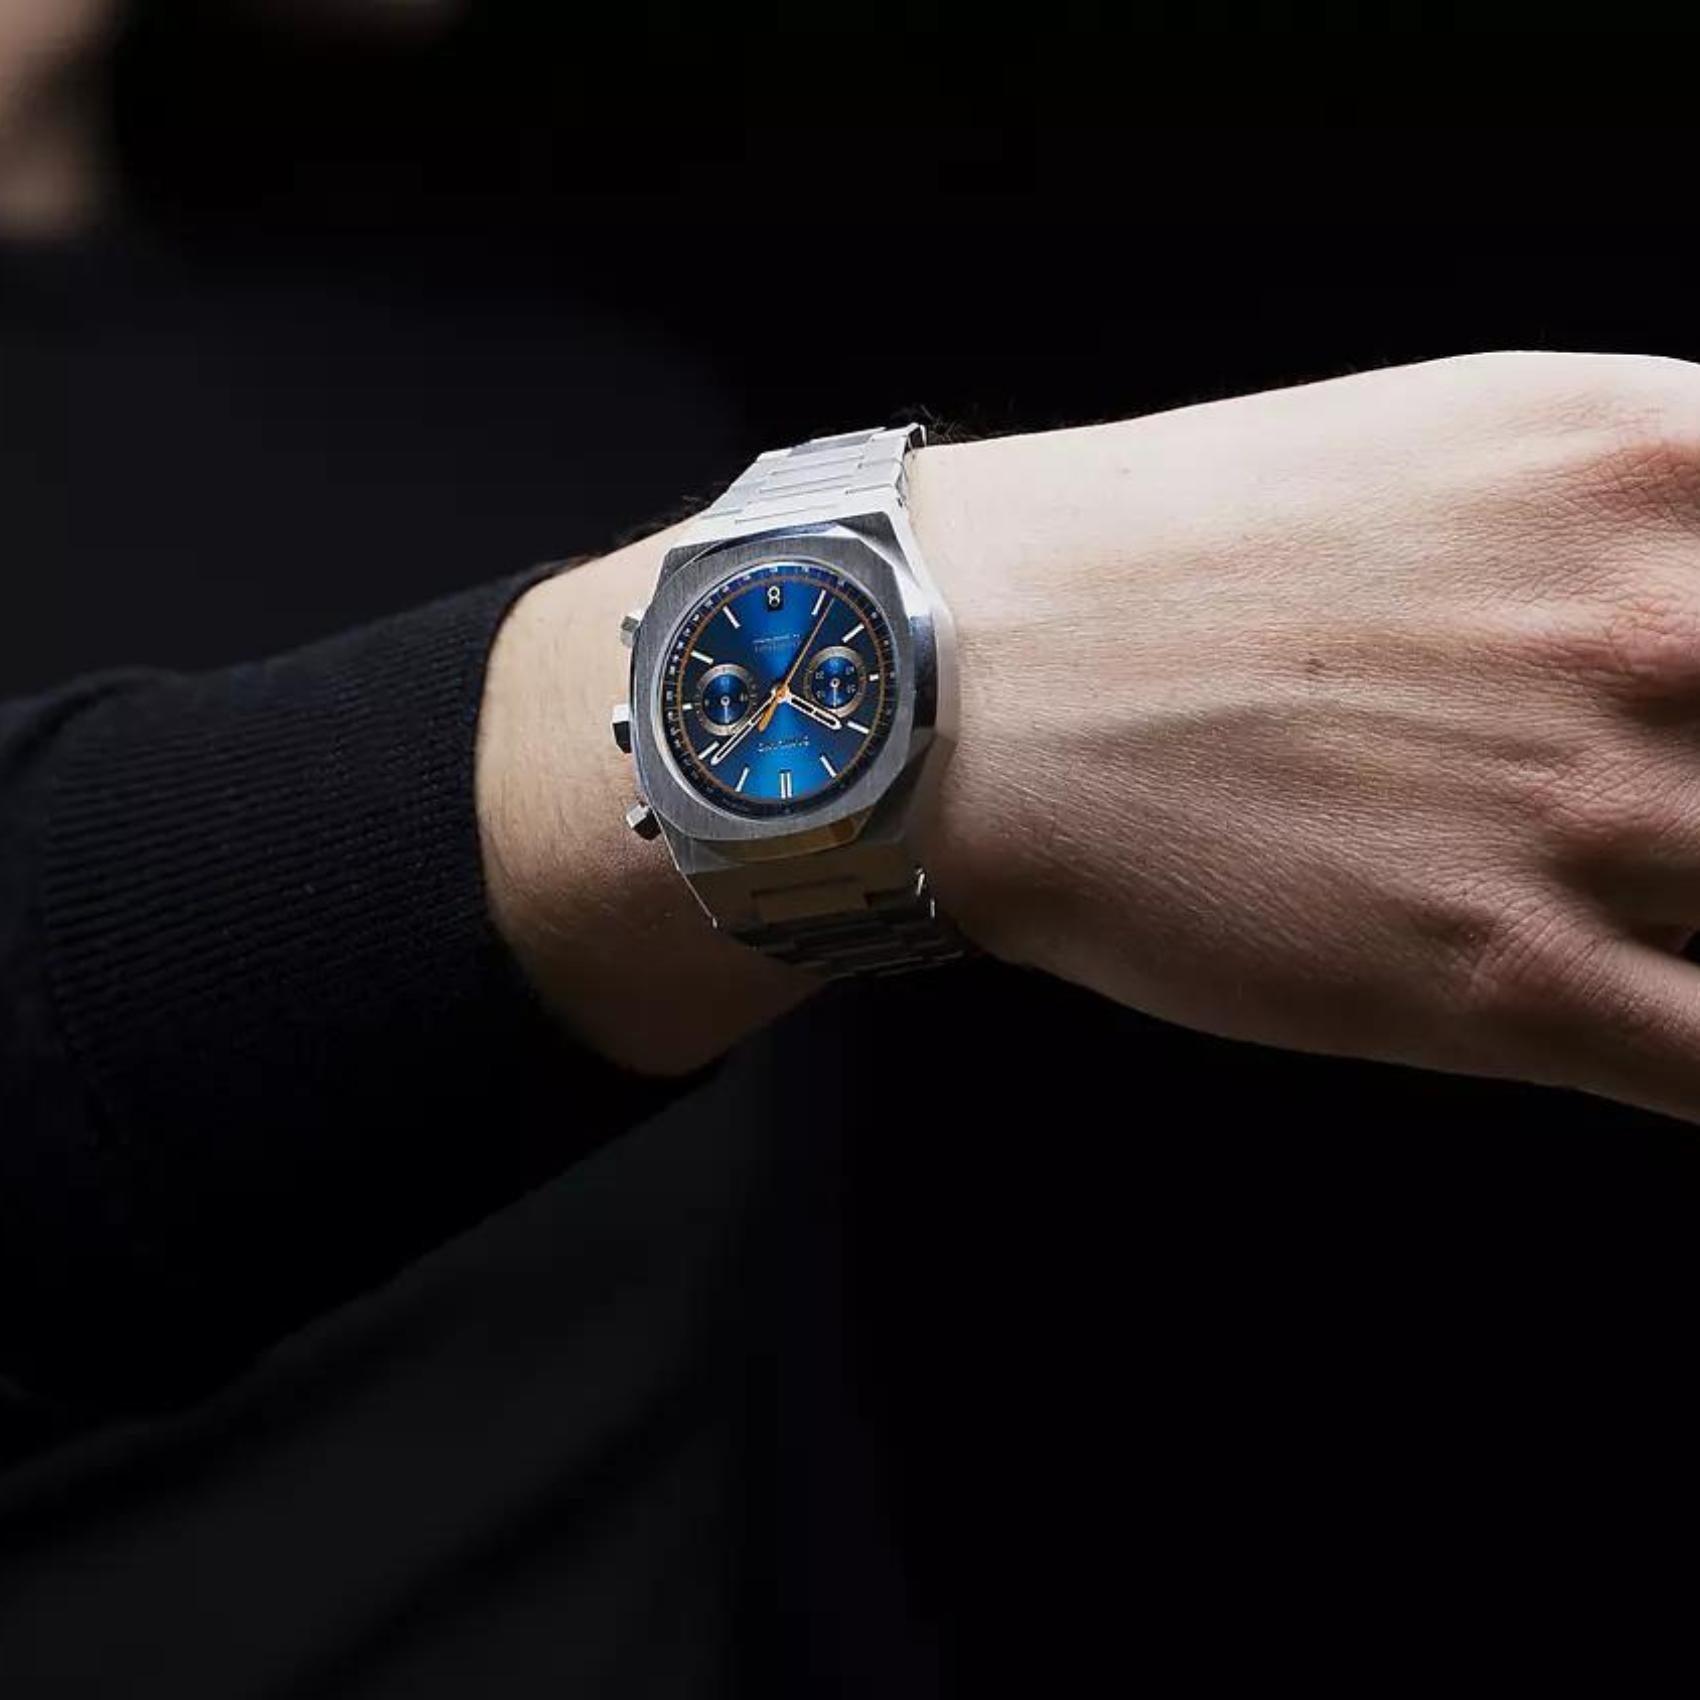 Ρολόι D1 Milano Royal Blue D1-CHBJ08 χρονογράφος με ασημί ατσάλινο μπρασελέ και μπλε καντράν 41.5mm με οκτάγωνο σχήμα.